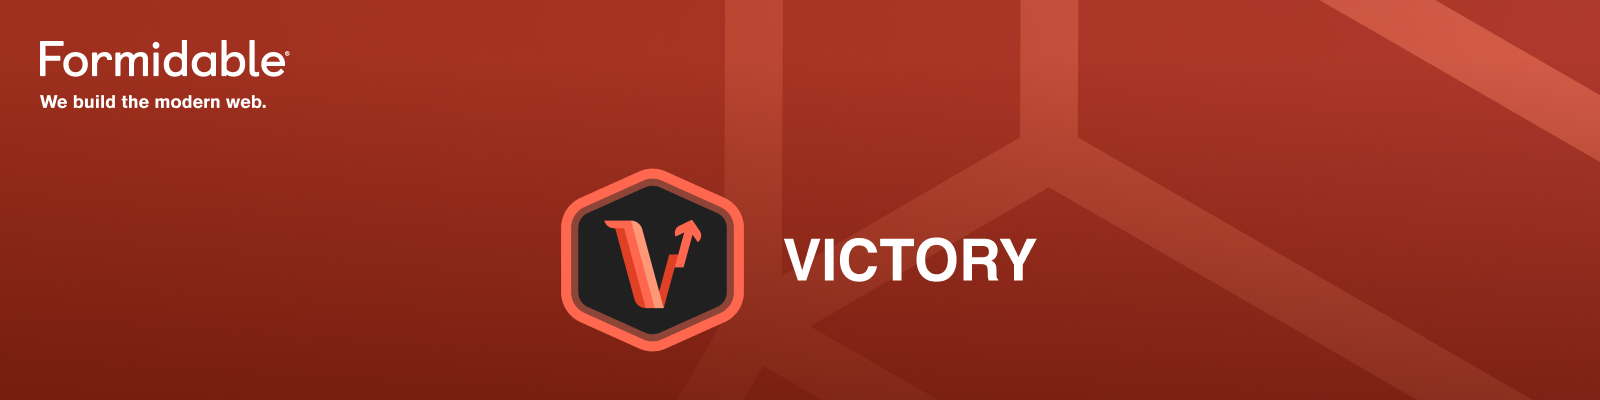 Victory-Hero.png